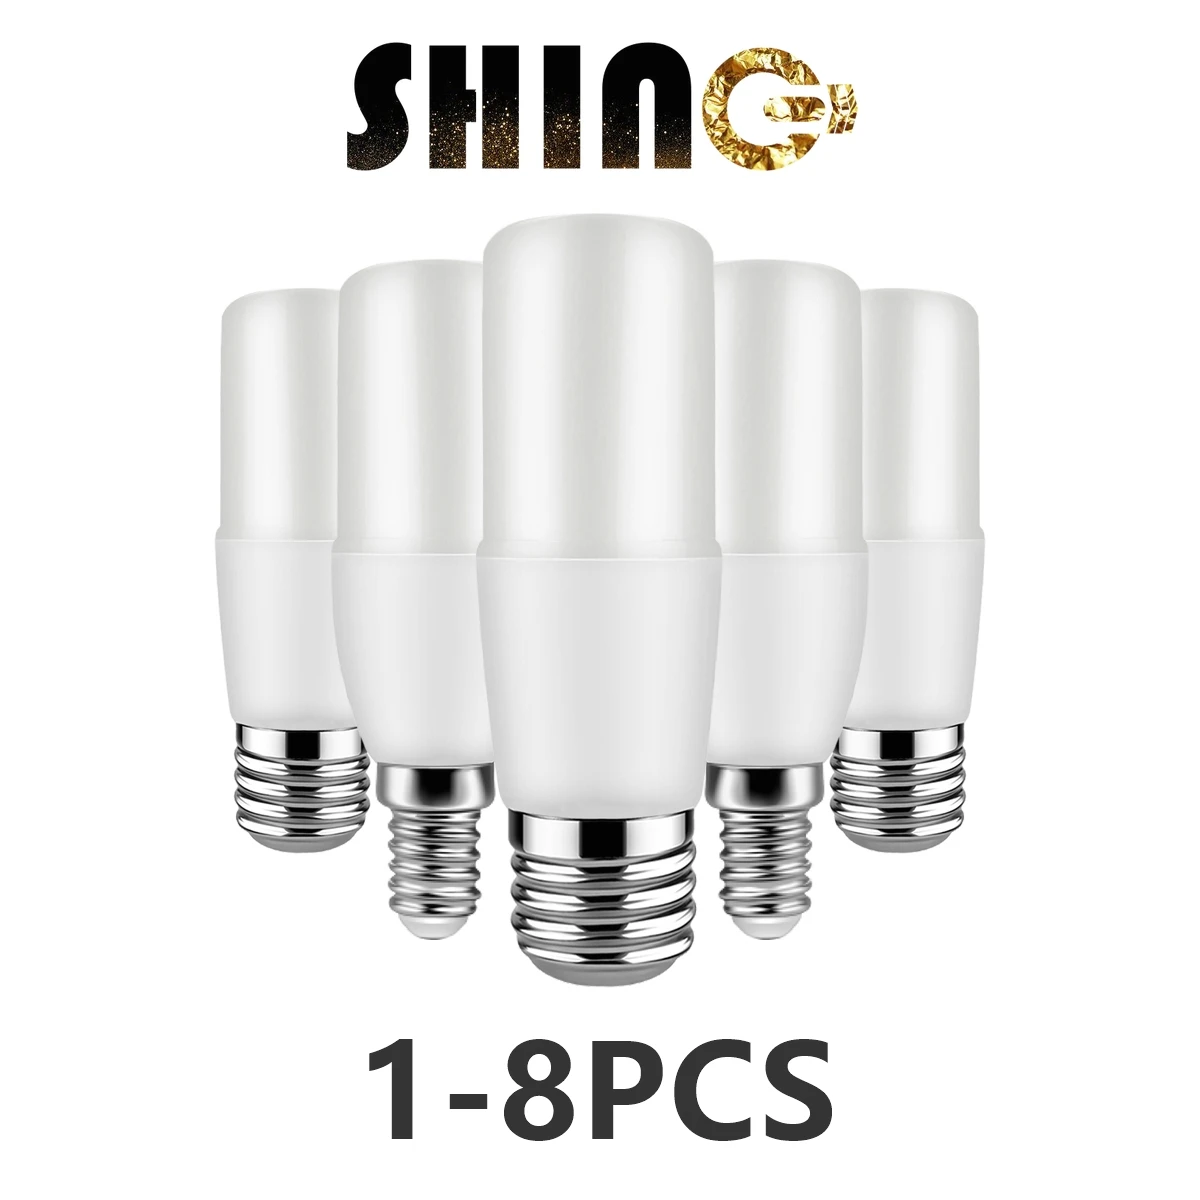 1-8pcs Bar Led Column Bulb T37 C37 9w AC220-240V E27 E14 Super Bright 3000K 4000K 6000K Lamp For Home Bedroom Office Decoration